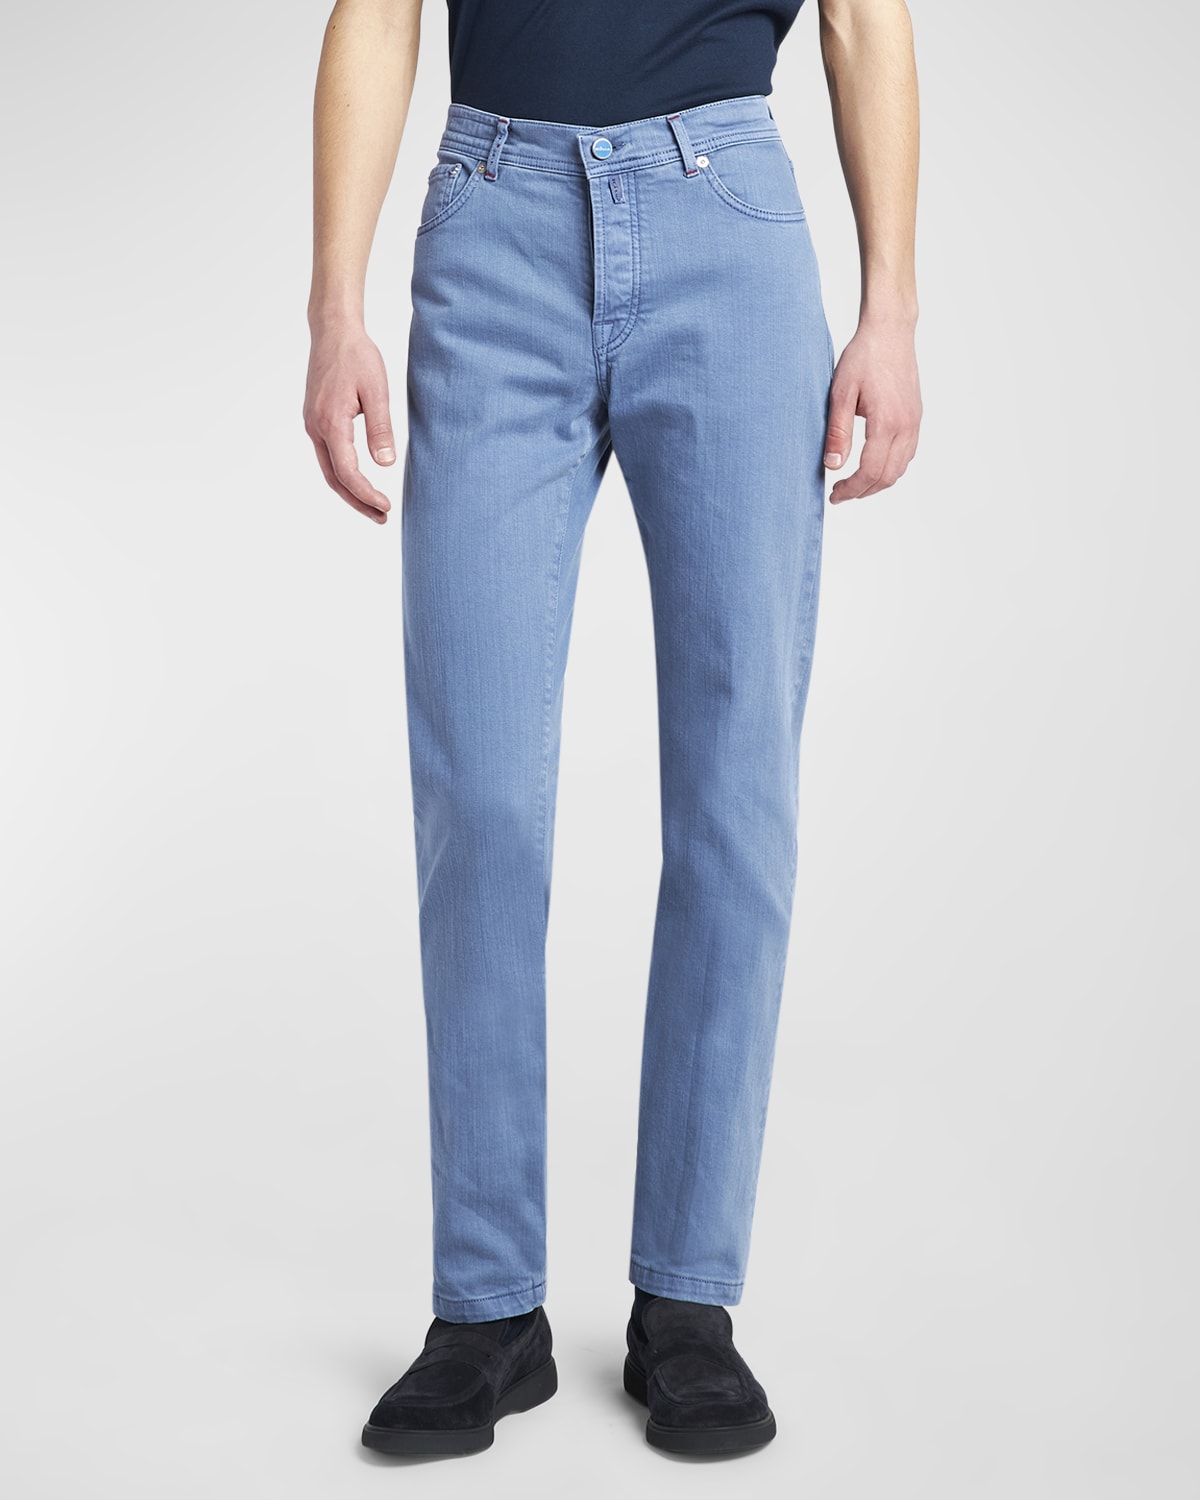 Kiton Slim Fit Five-Pocket Cotton-Stretch Pants, Pants